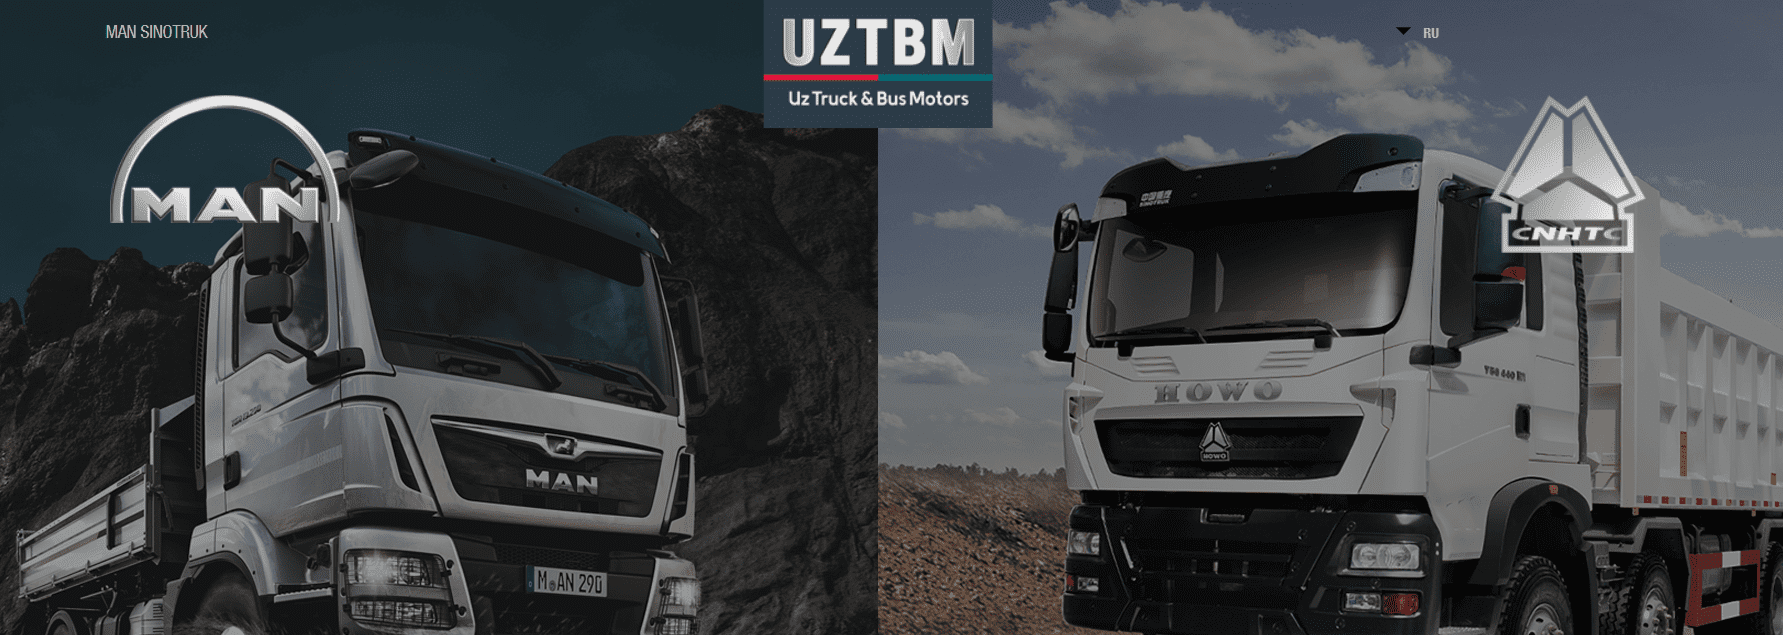 Uztbm.uz - официальный сайт